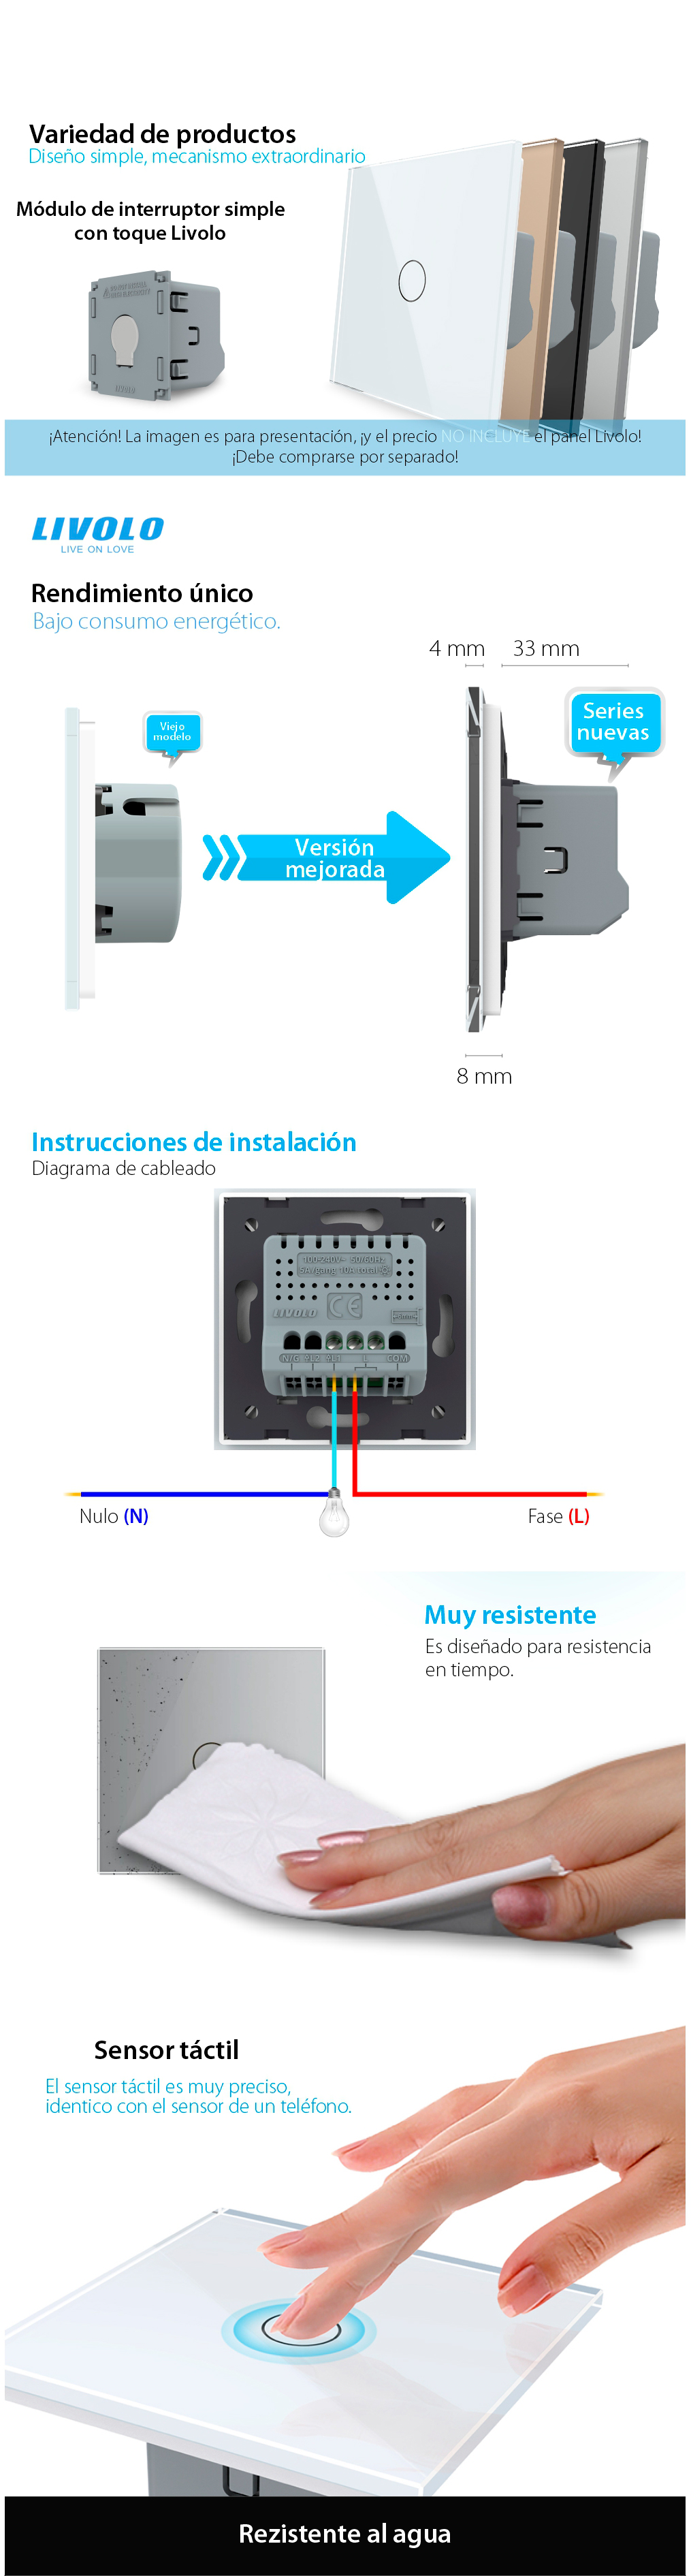 Módulo de interruptor simple táctil Livolo, estándar alemán – serie nueva